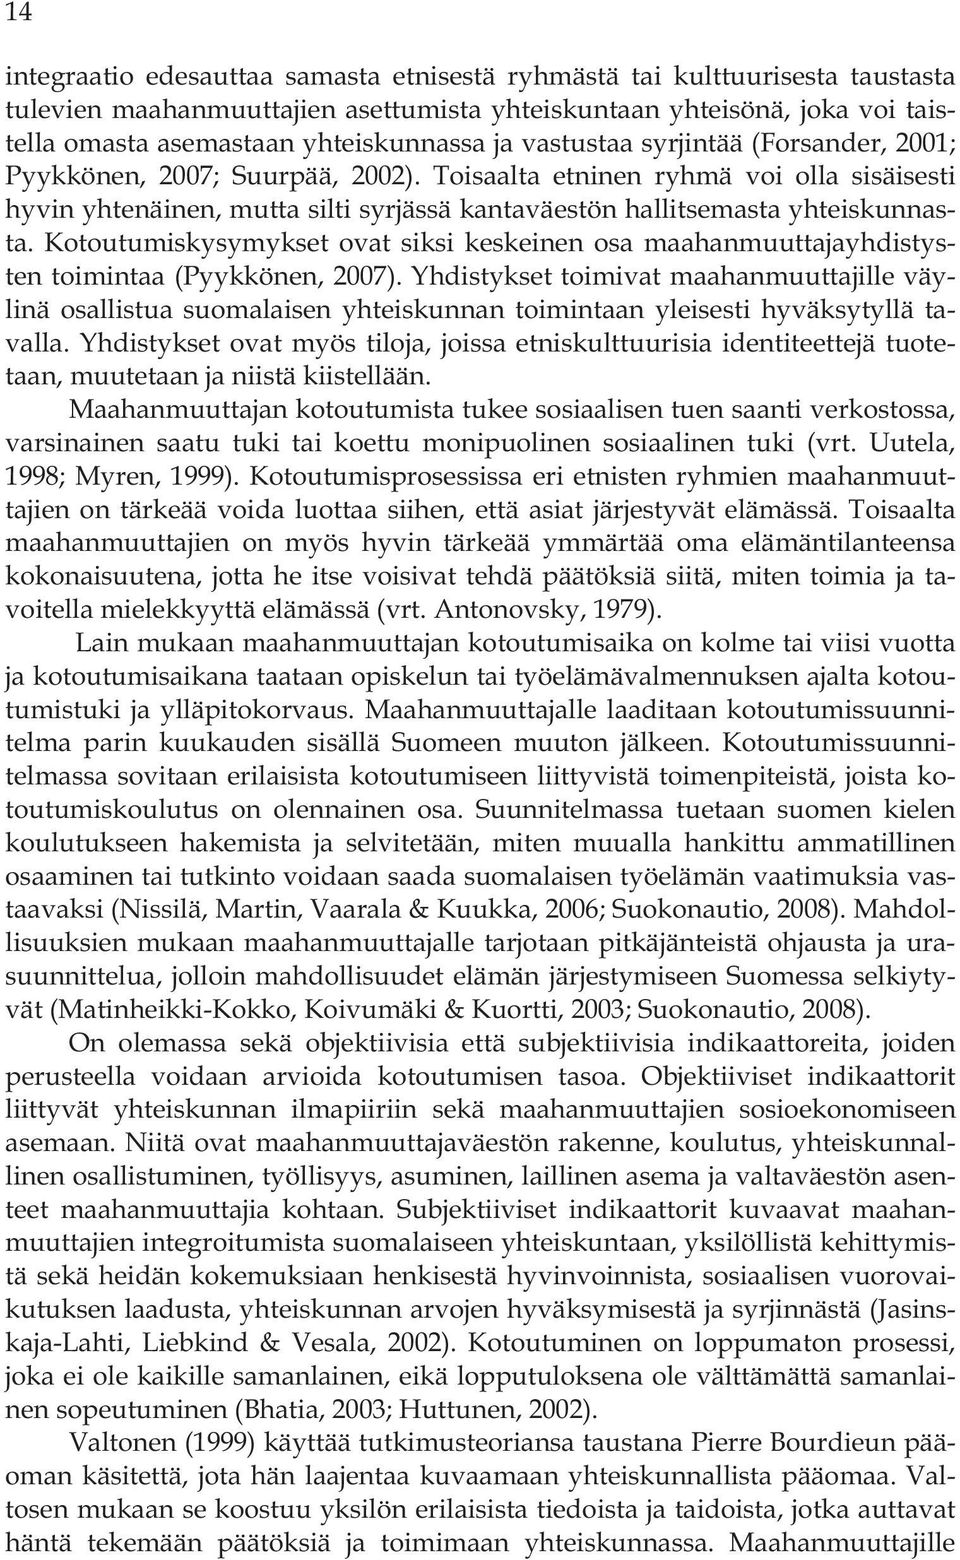 Kotoutumiskysymykset ovat siksi keskeinen osa maahanmuuttajayhdistysten toimintaa (Pyykkönen, 2007).